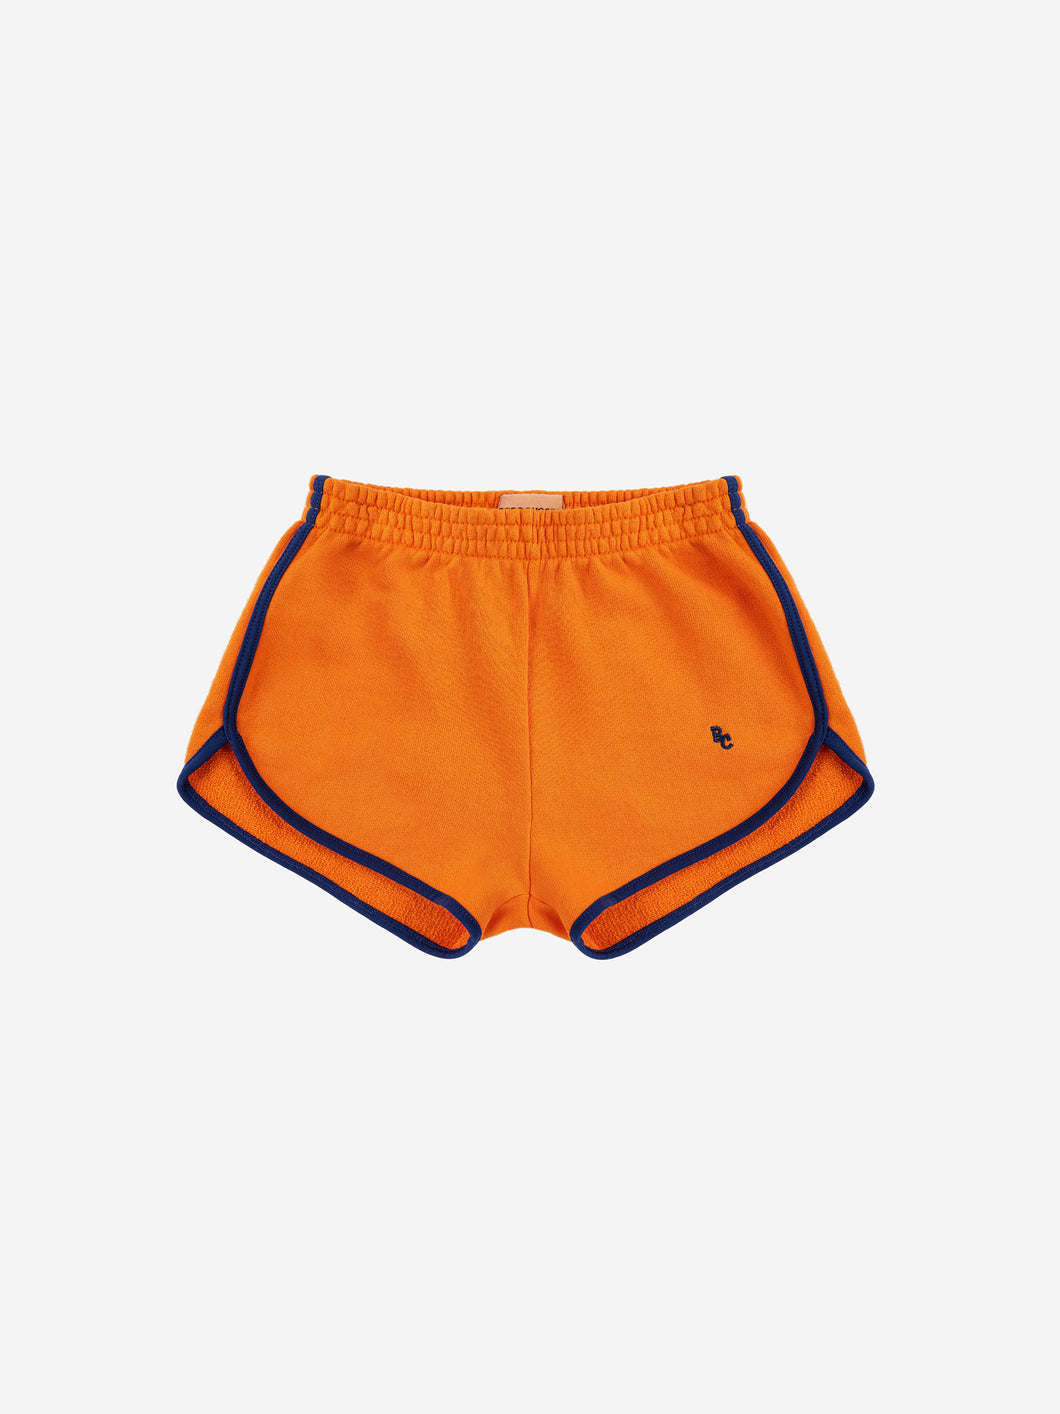 Bobo Choses / KID / Shorts / BC Orange